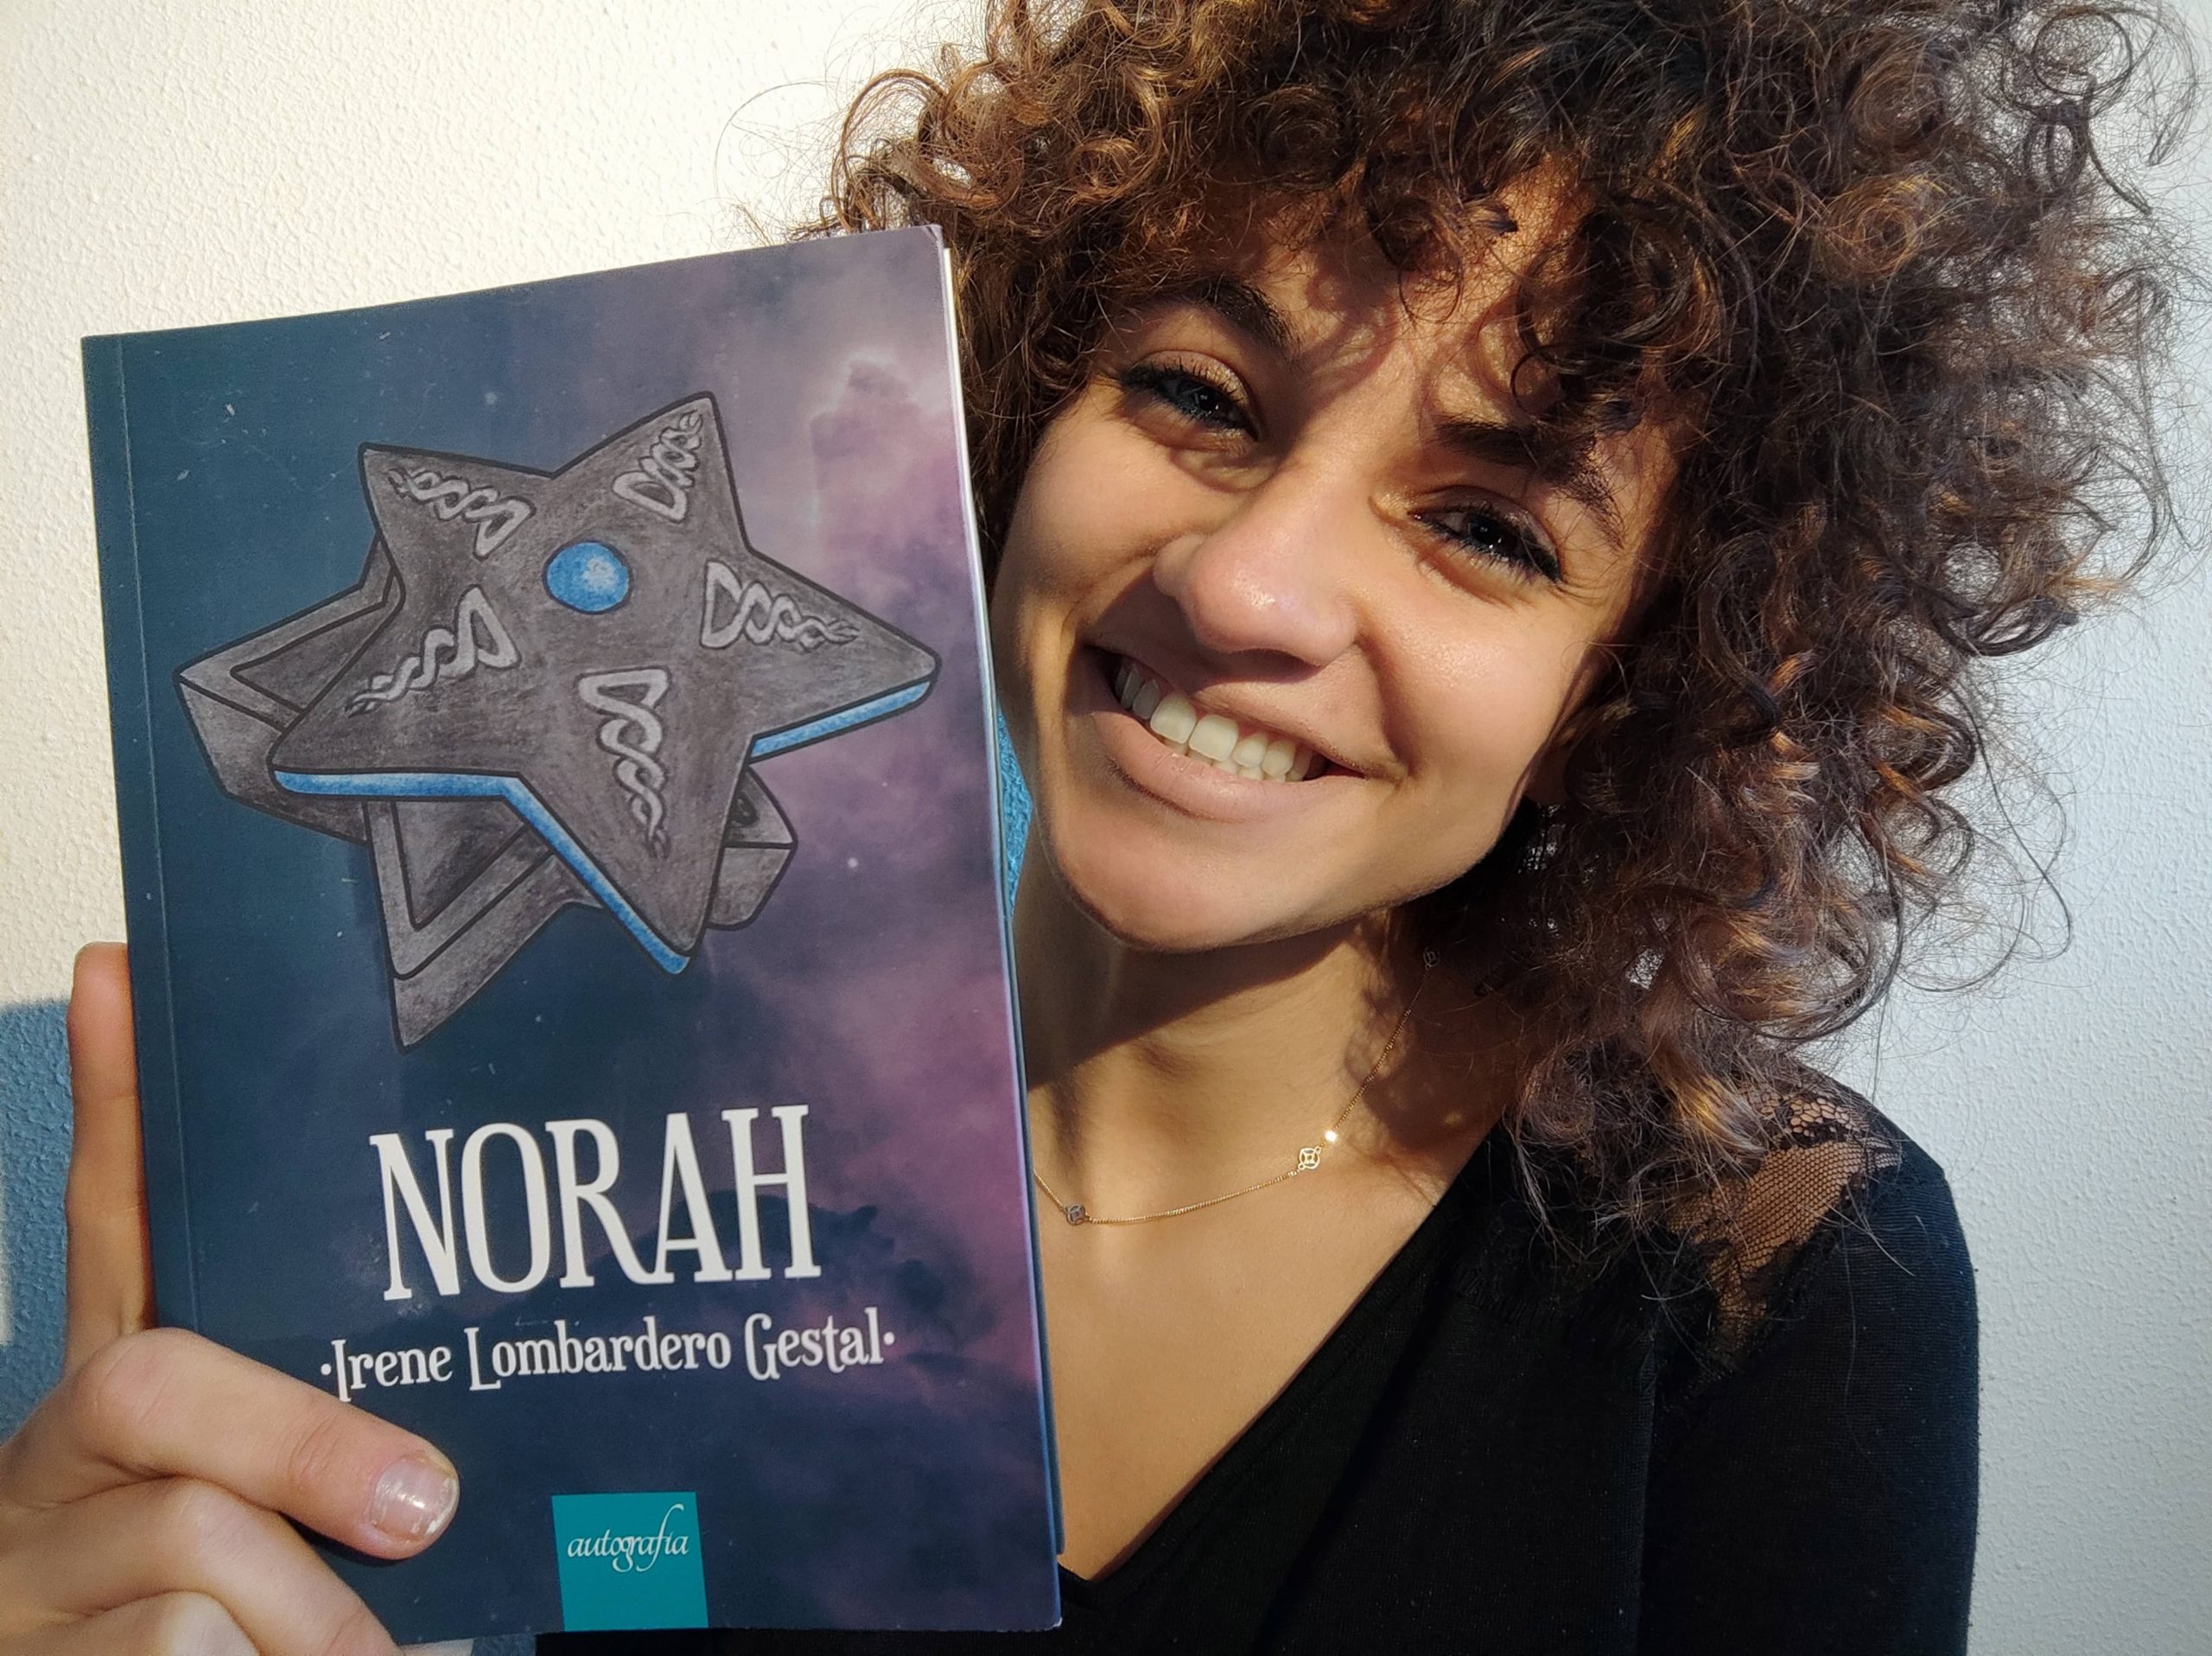 Descubre “Norah”, opera prima de Irene Lombardero